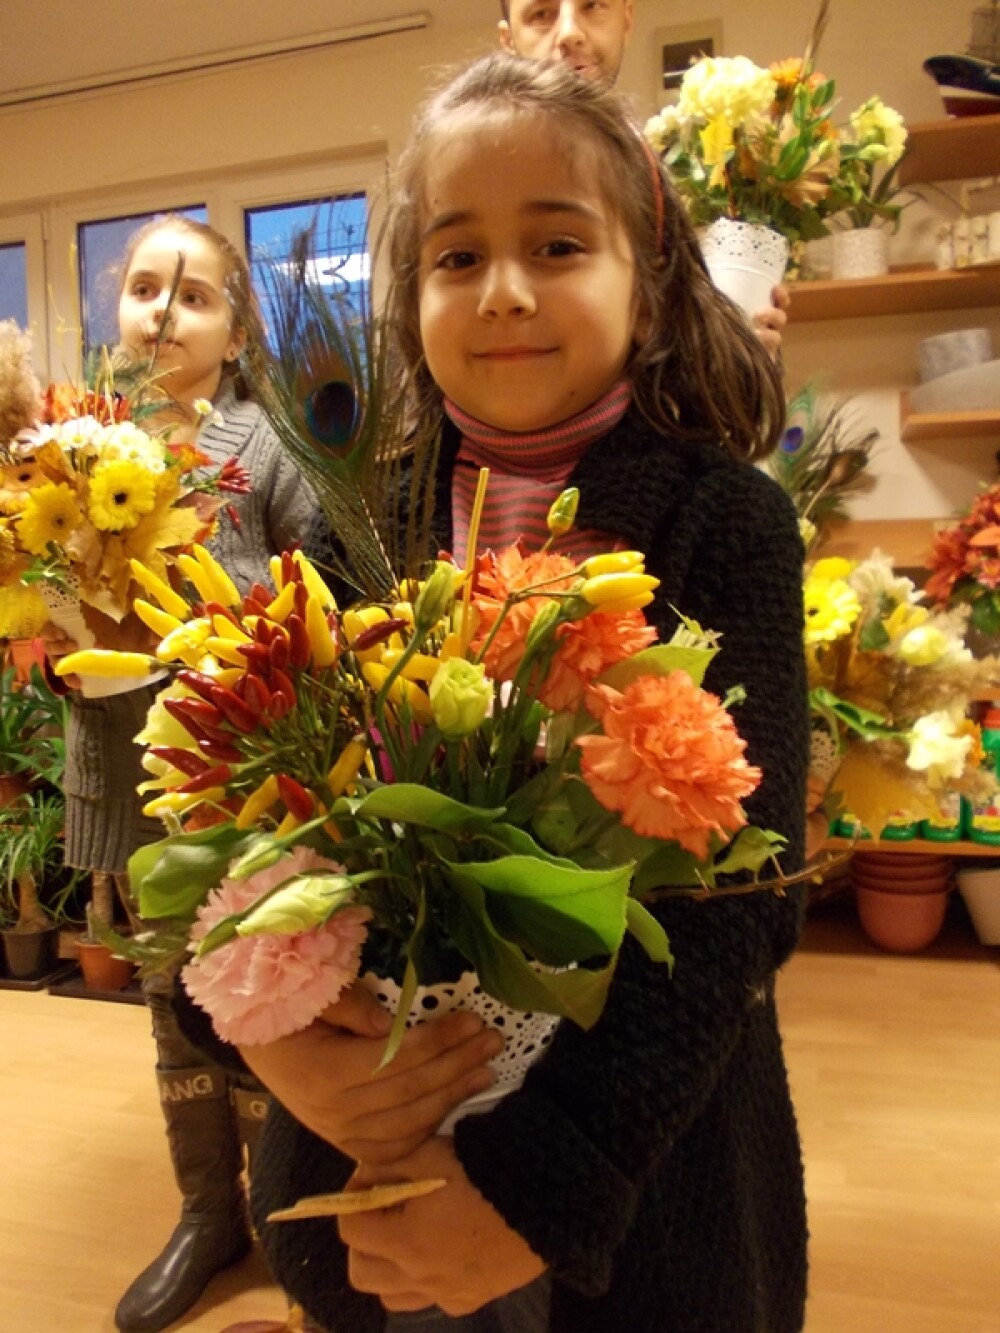 Prichindei, dar florari priceputi. Vezi ce aranjamente florale au reusit sa faca patru copii - Imaginea 12